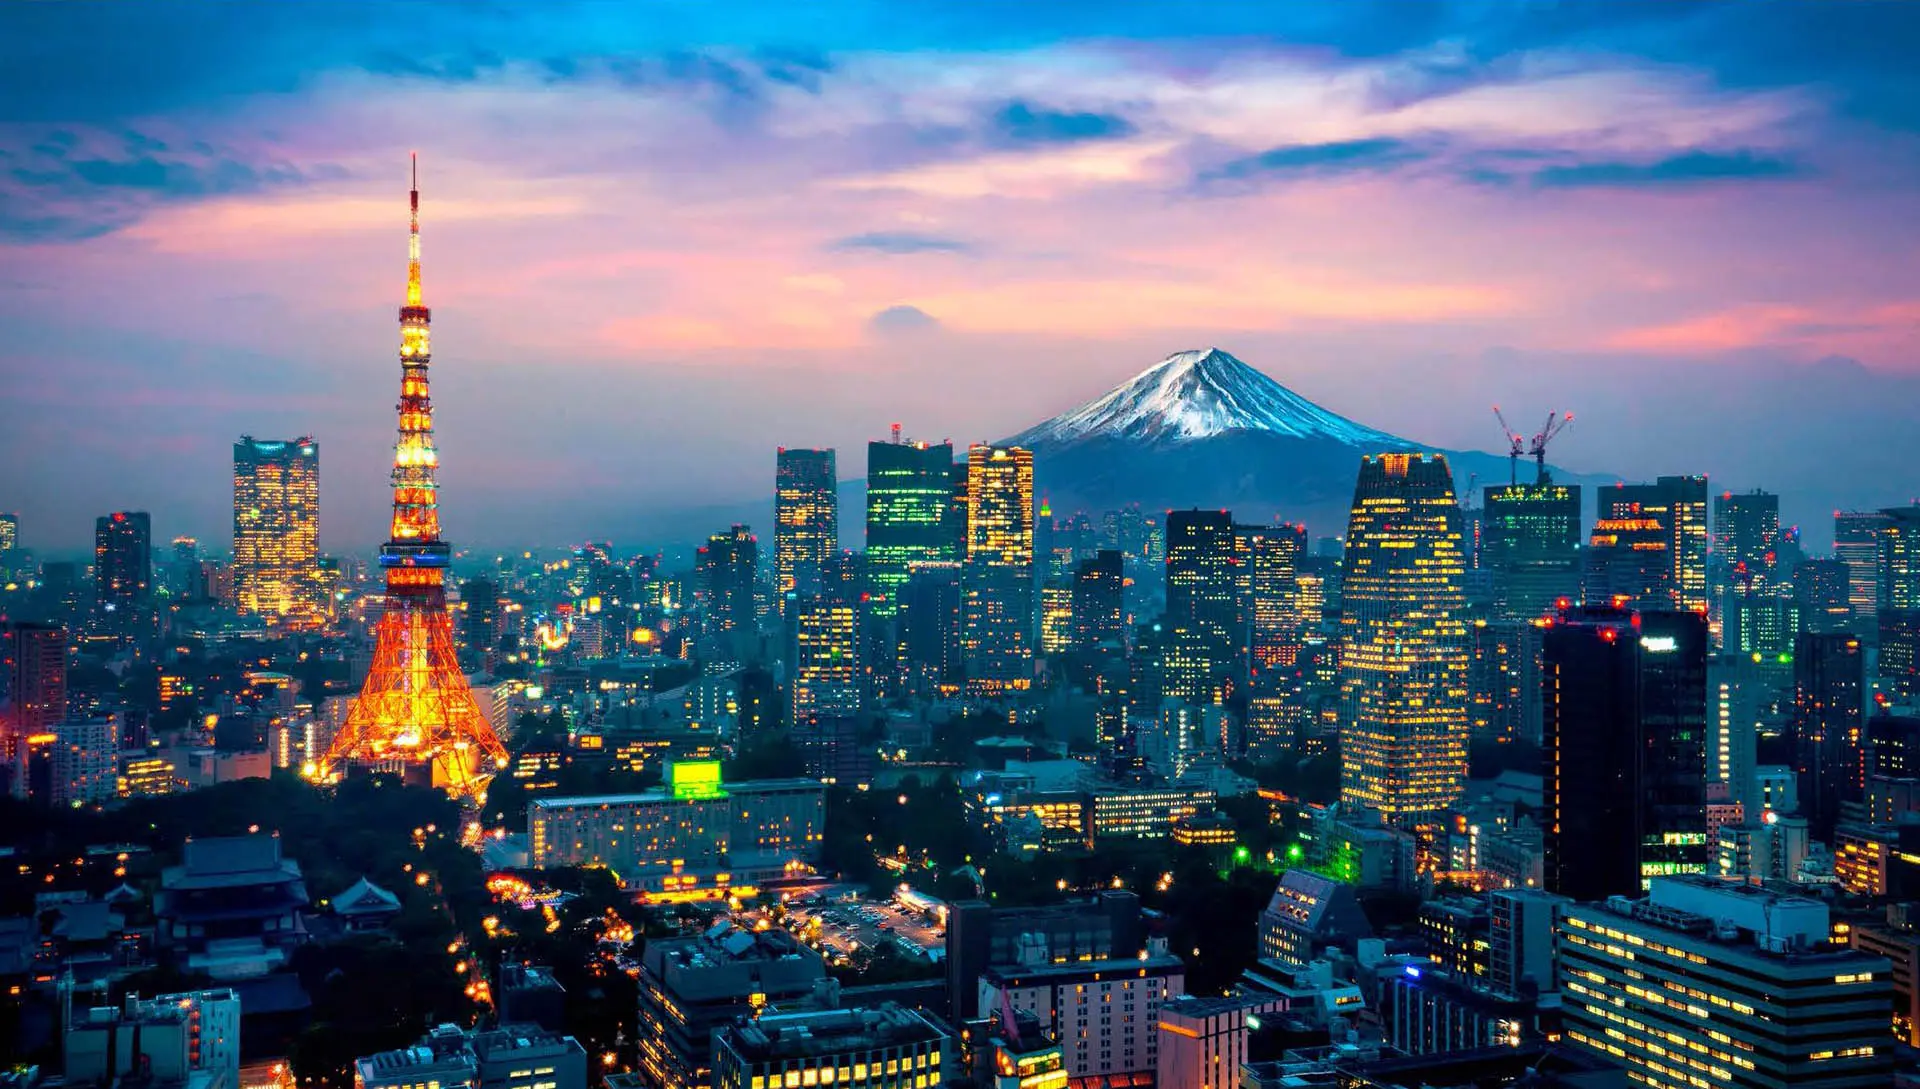 Börsenbericht: Nur vereinzelte Gewinner - Blickpunkt: Japan im Aufwärtstrend